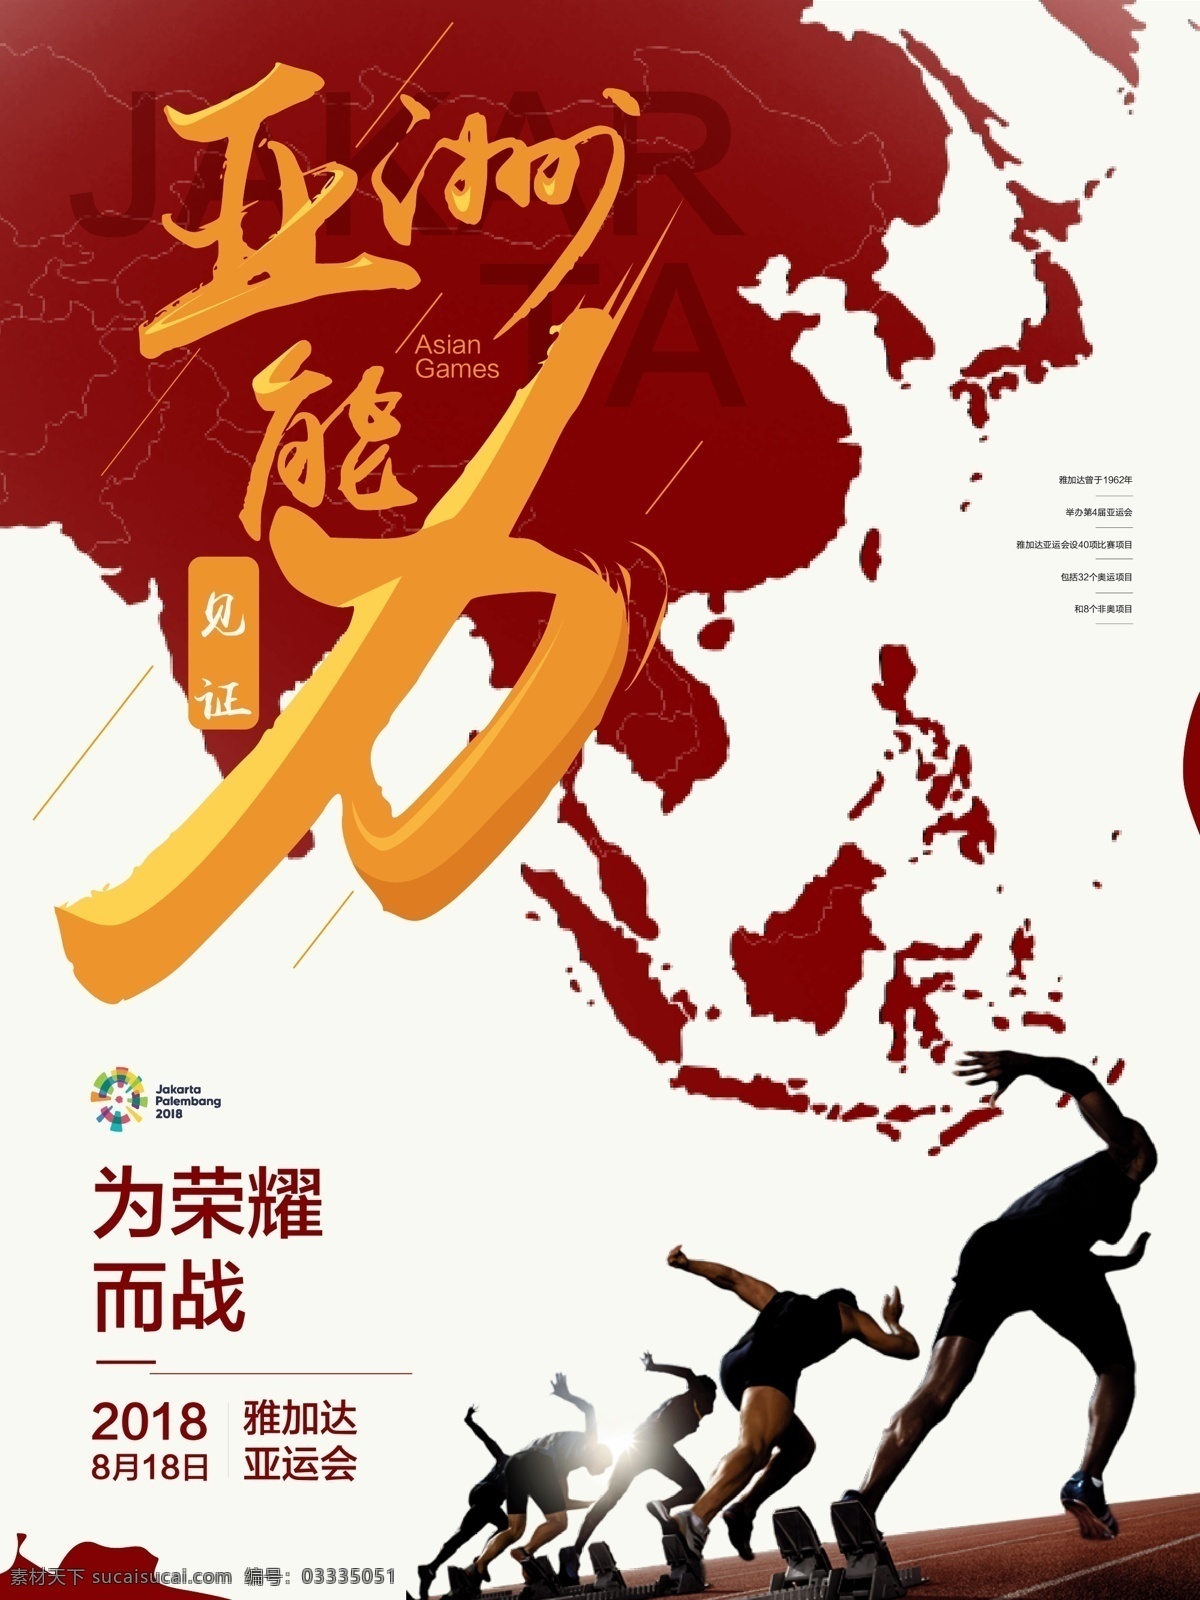 亚运会 运动 大气 商业 海报 赛道 跑步 创意字体 红黄 为荣誉而战 亚洲地图 能力